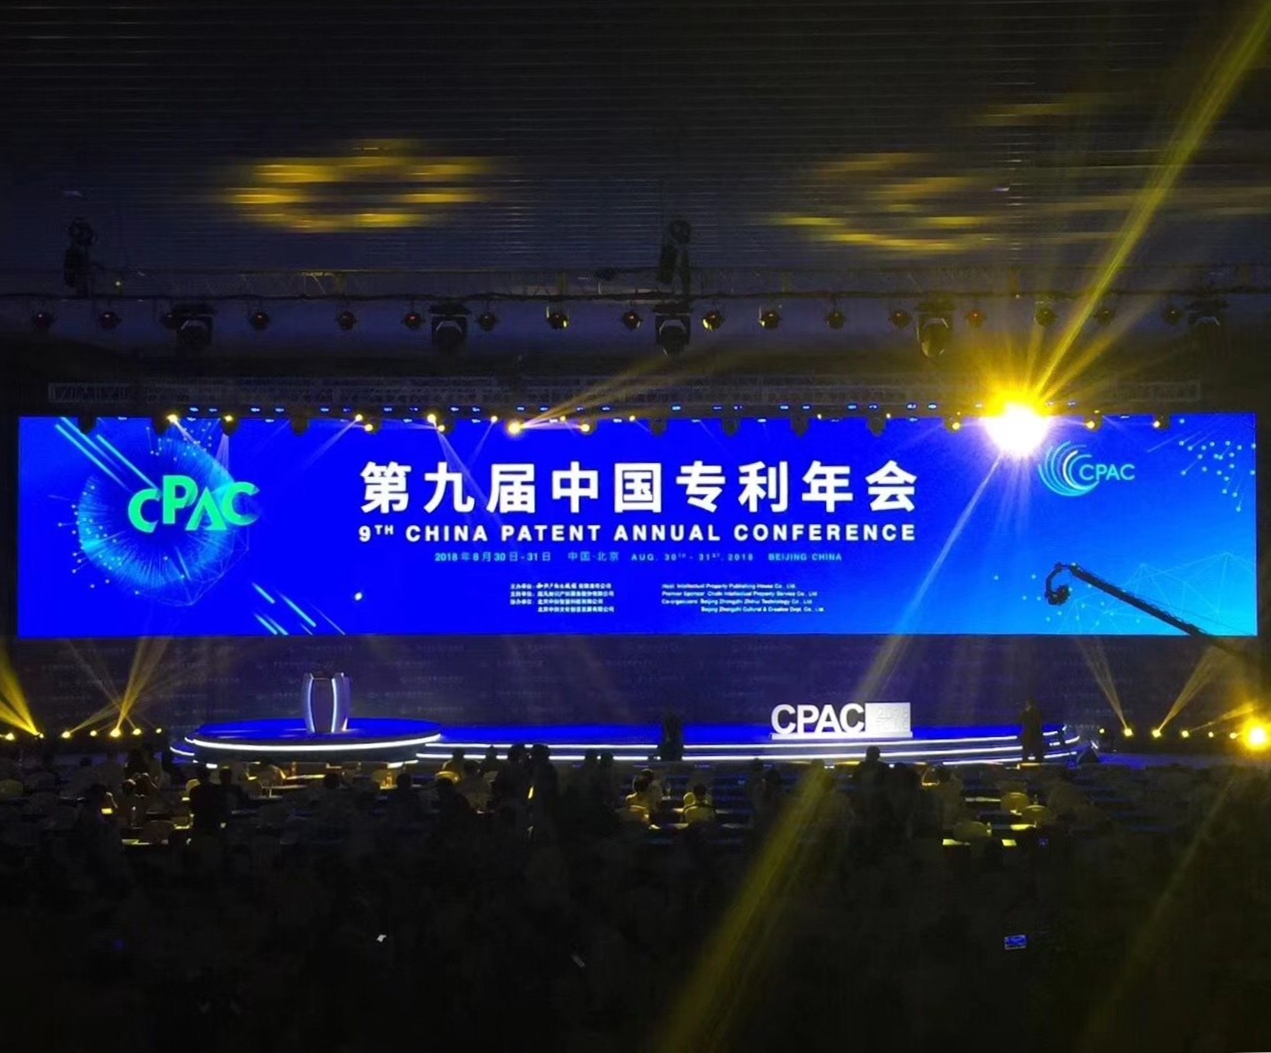 2018年CPAC第九届中国专利年会今日在北京召开！